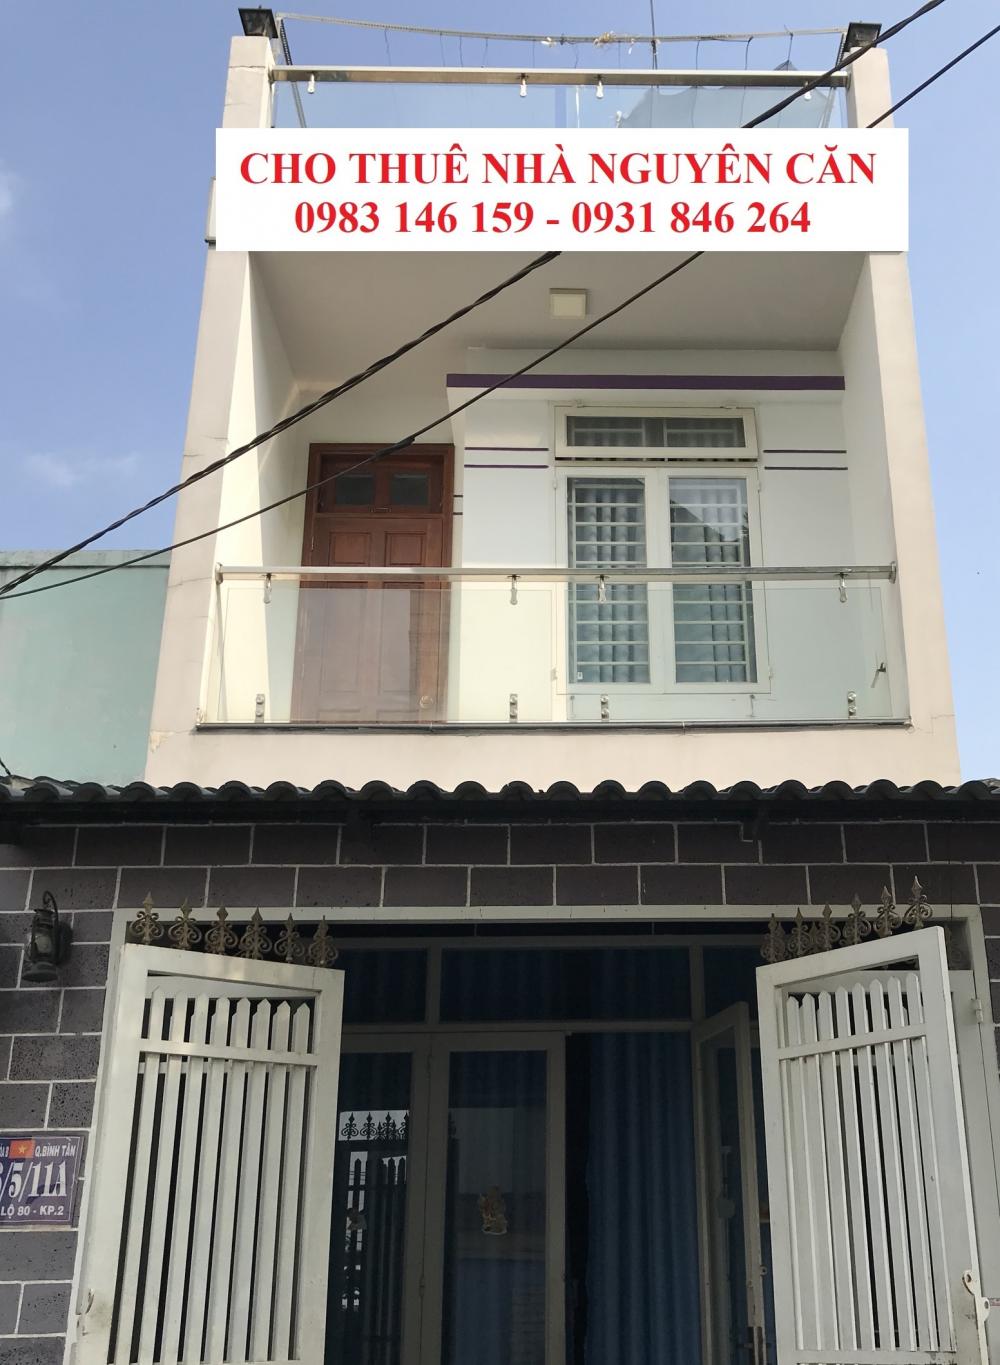 Chính chủ cho thuê gấp nhà nguyên căn P. Bình Hưng Hòa B, Q. Bình Tân, TP. HCM